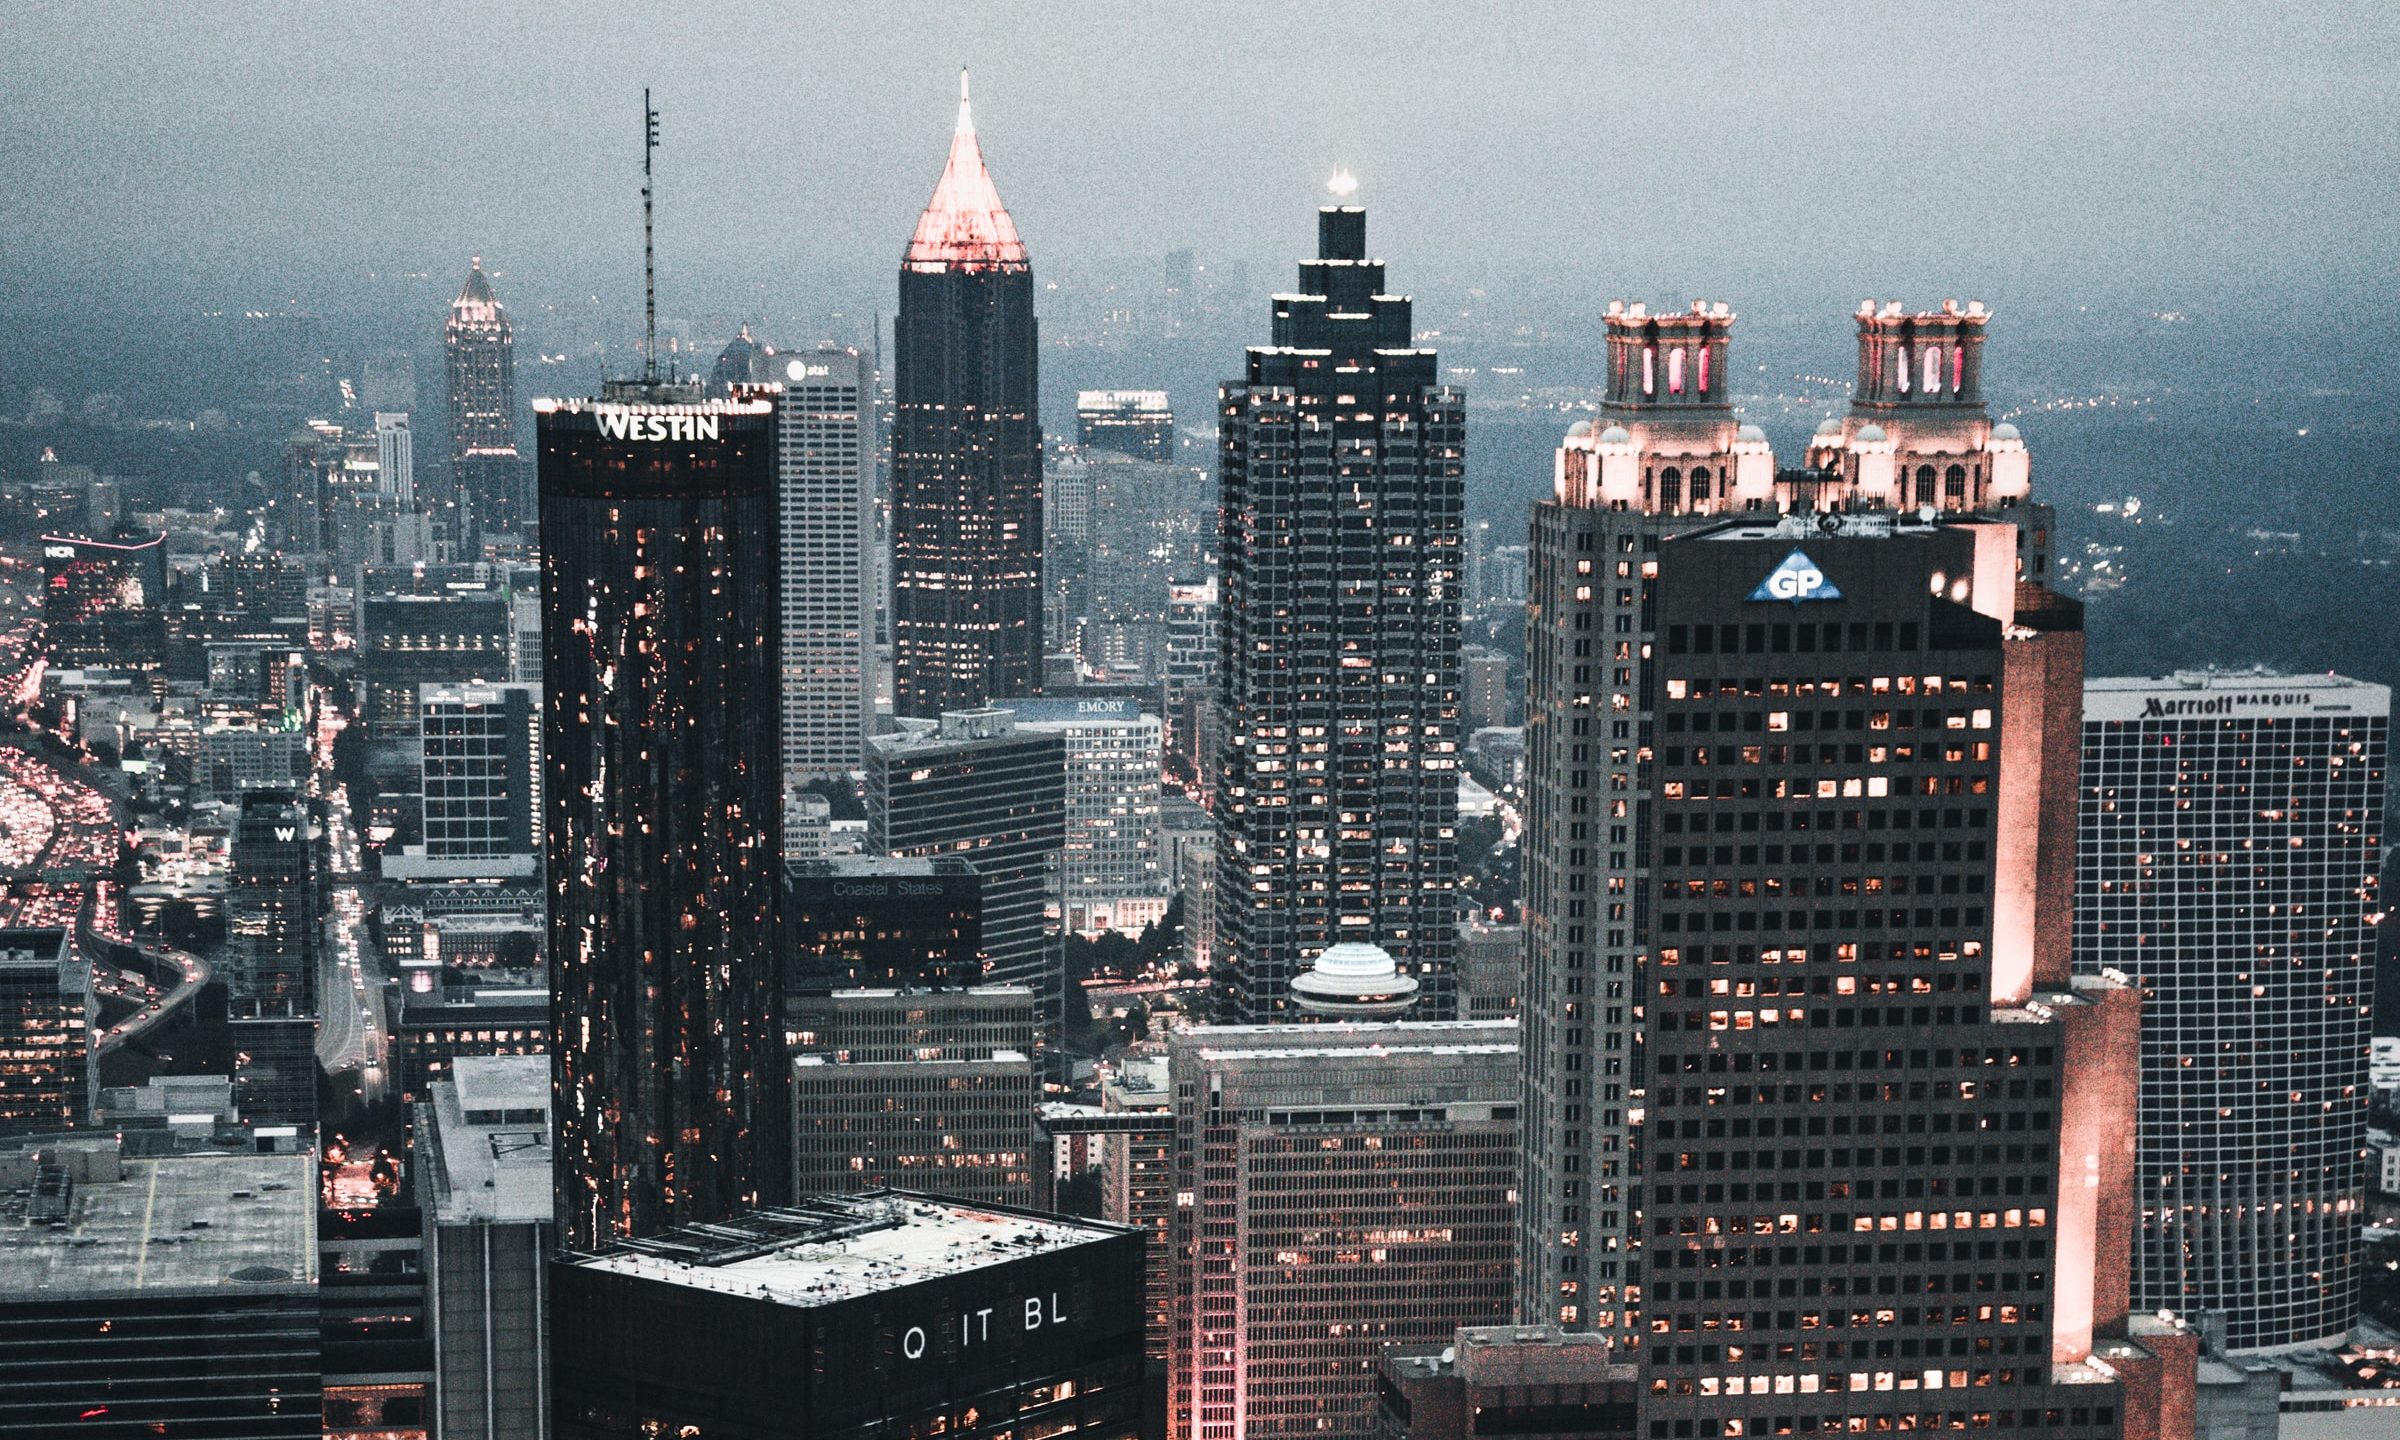 Downtown Atlanta skyline